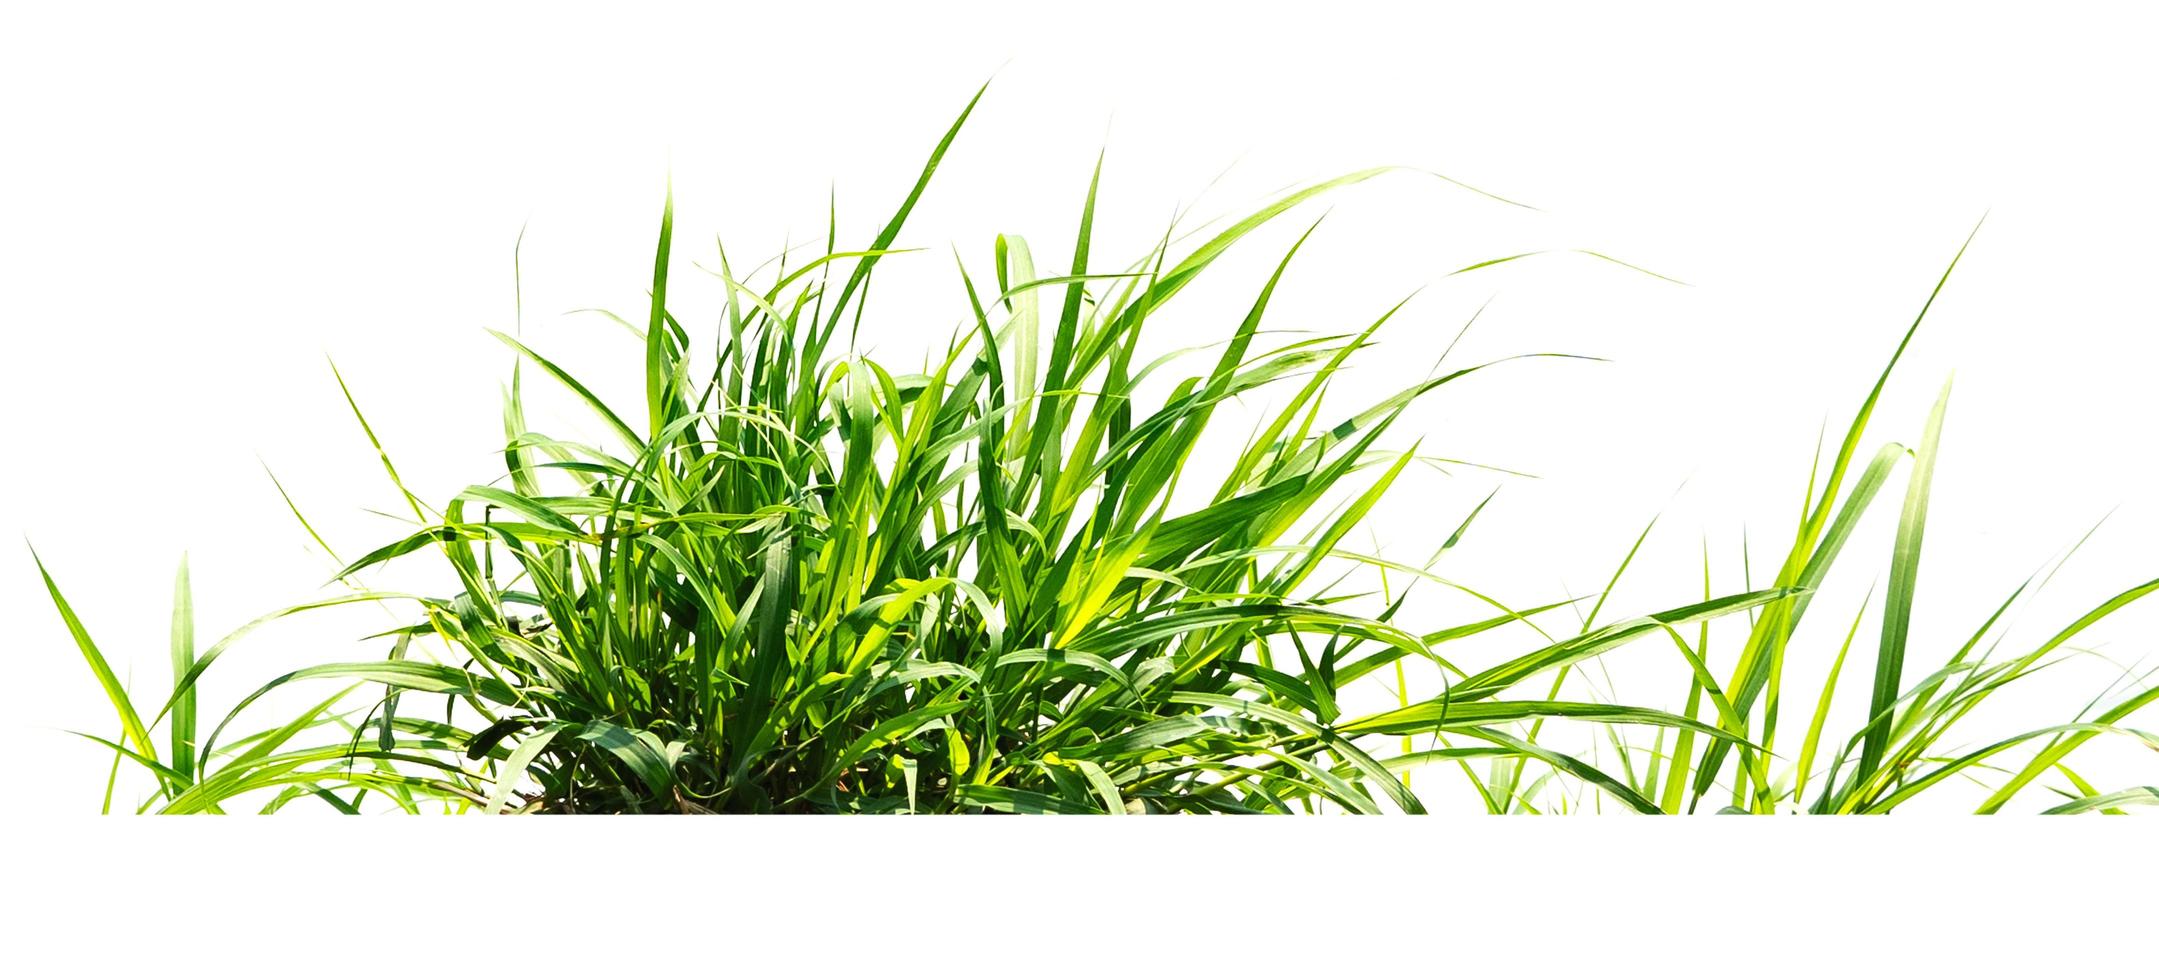 groen gras isoleren op witte achtergrond foto